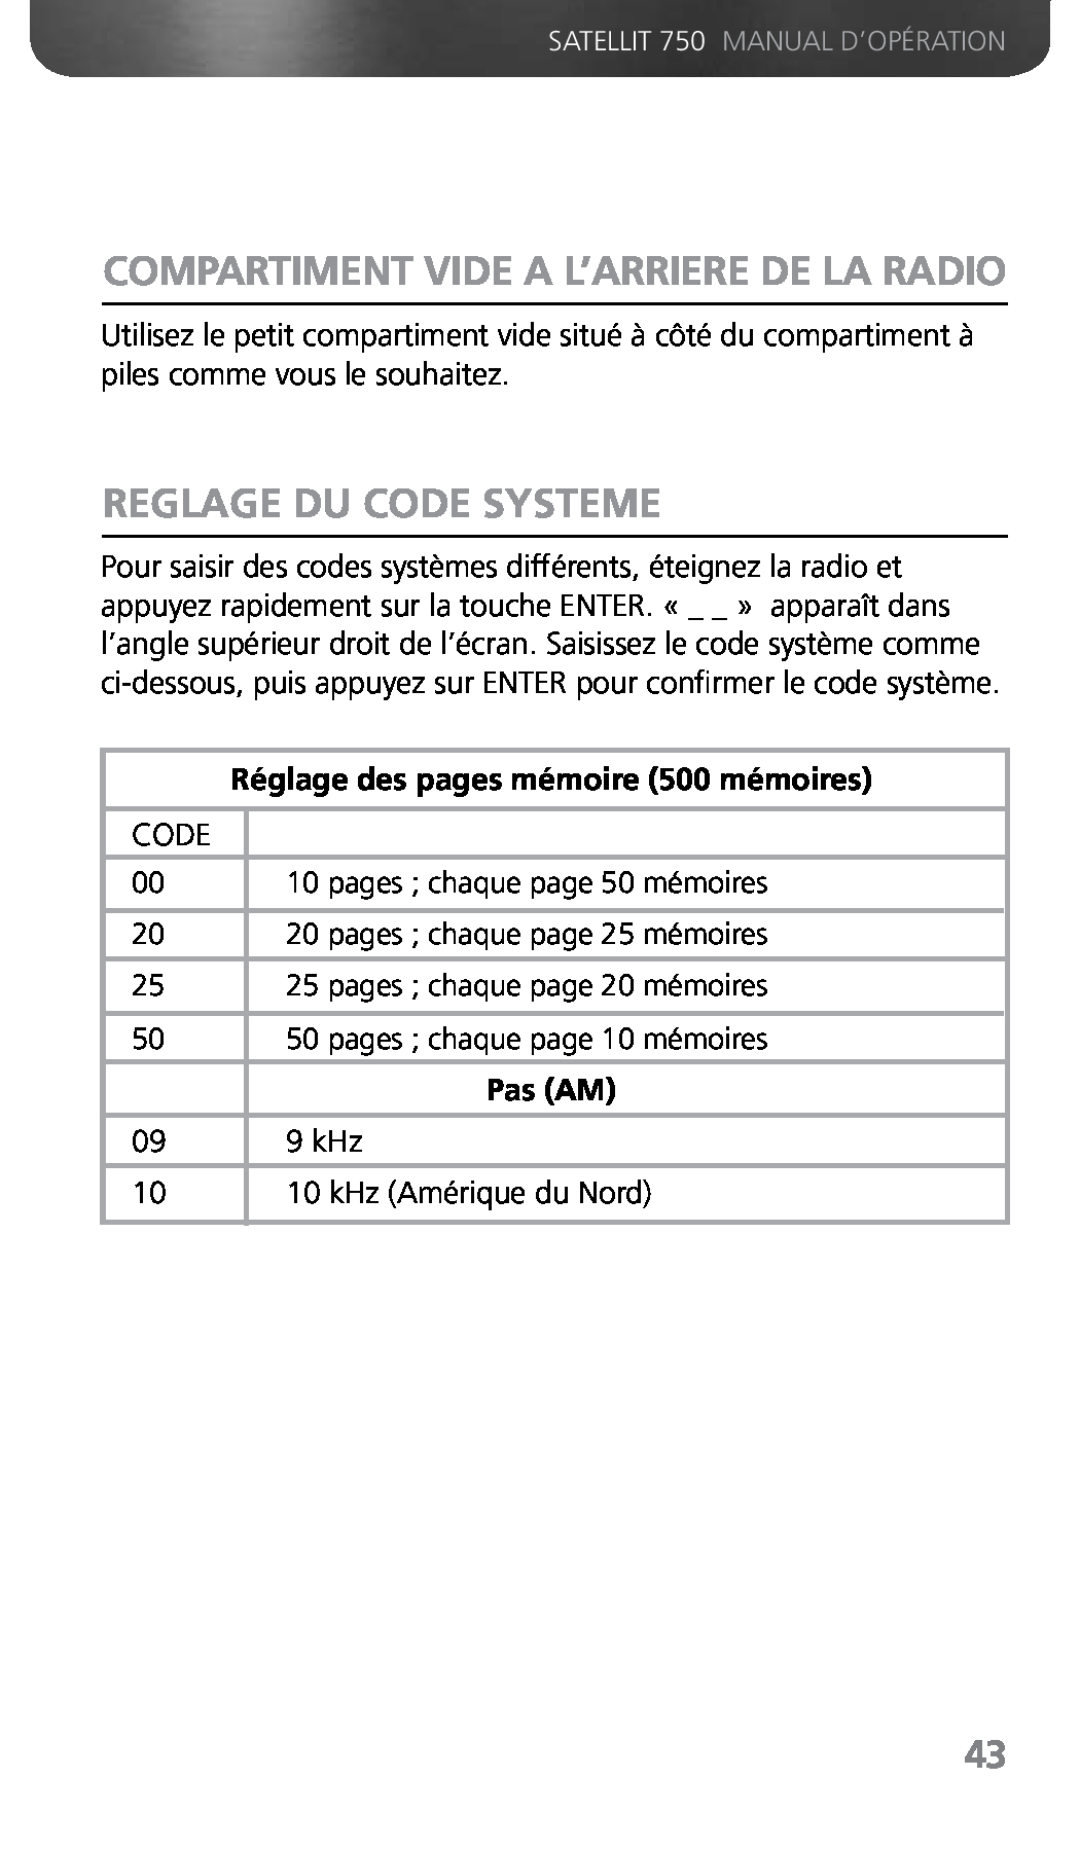 Grundig 750 Reglage Du Code Systeme, Compartiment Vide A L’Arriere De La Radio, Réglage des pages mémoire 500 mémoires 